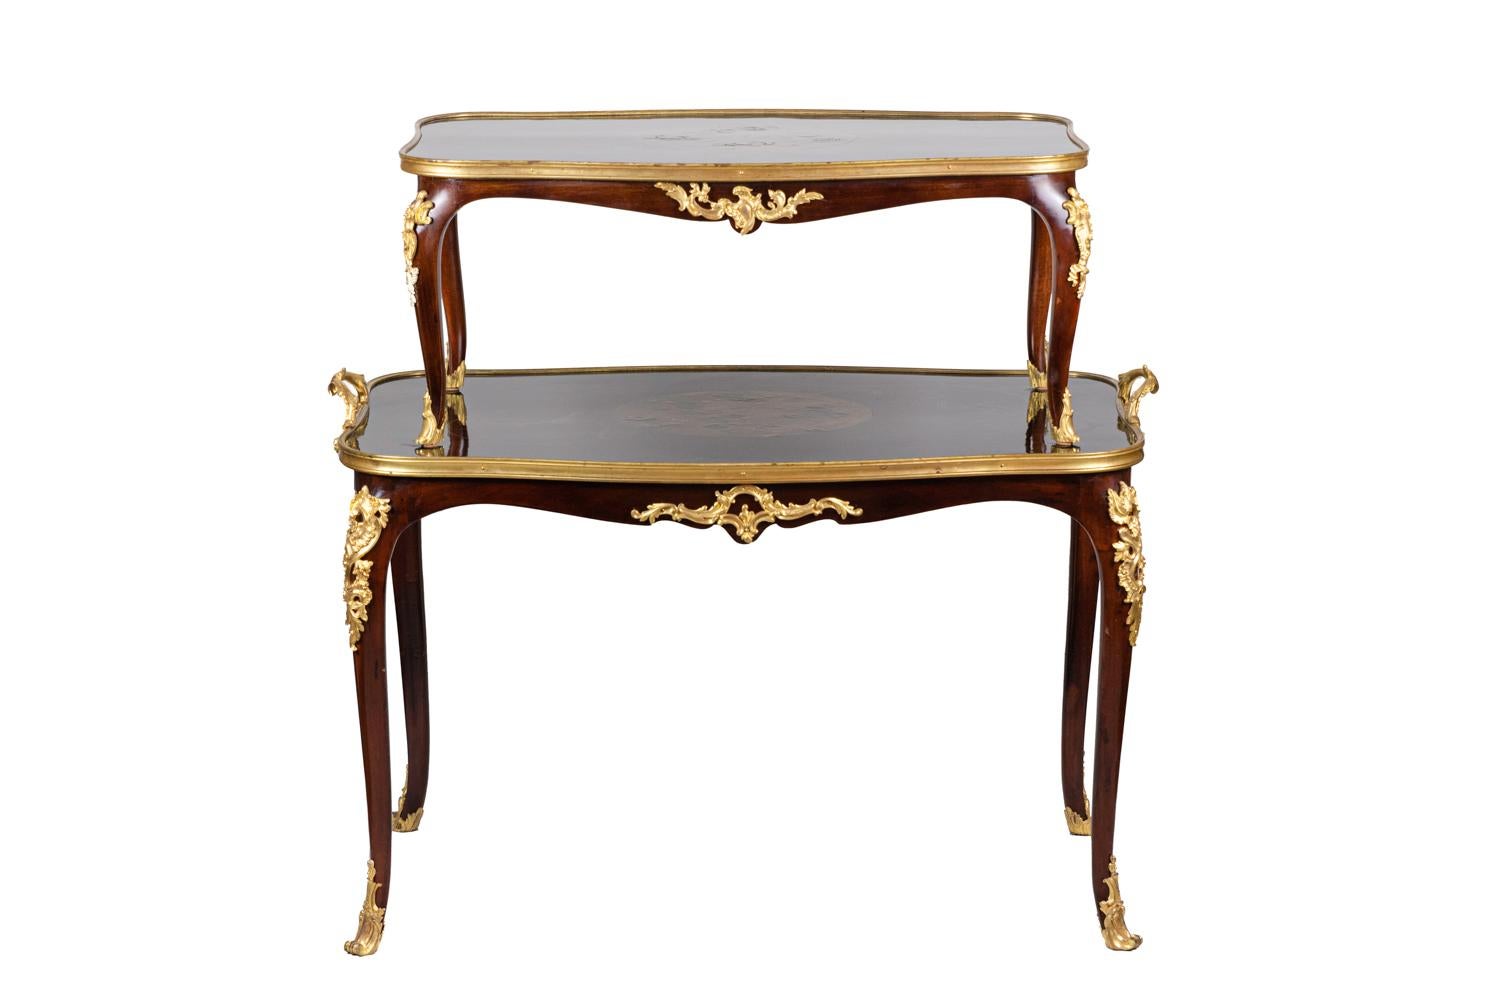 Teetisch im Louis XV-Stil aus Mahagoni mit zwei überlappenden, gewellten Tabletts, die jeweils auf vier Cabriole-Beinen stehen. Abnehmbares oberes Fach.
Lackdekor mit schwarzem Hintergrund und vergoldeten chinesischen Motiven, die drei Kreise mit